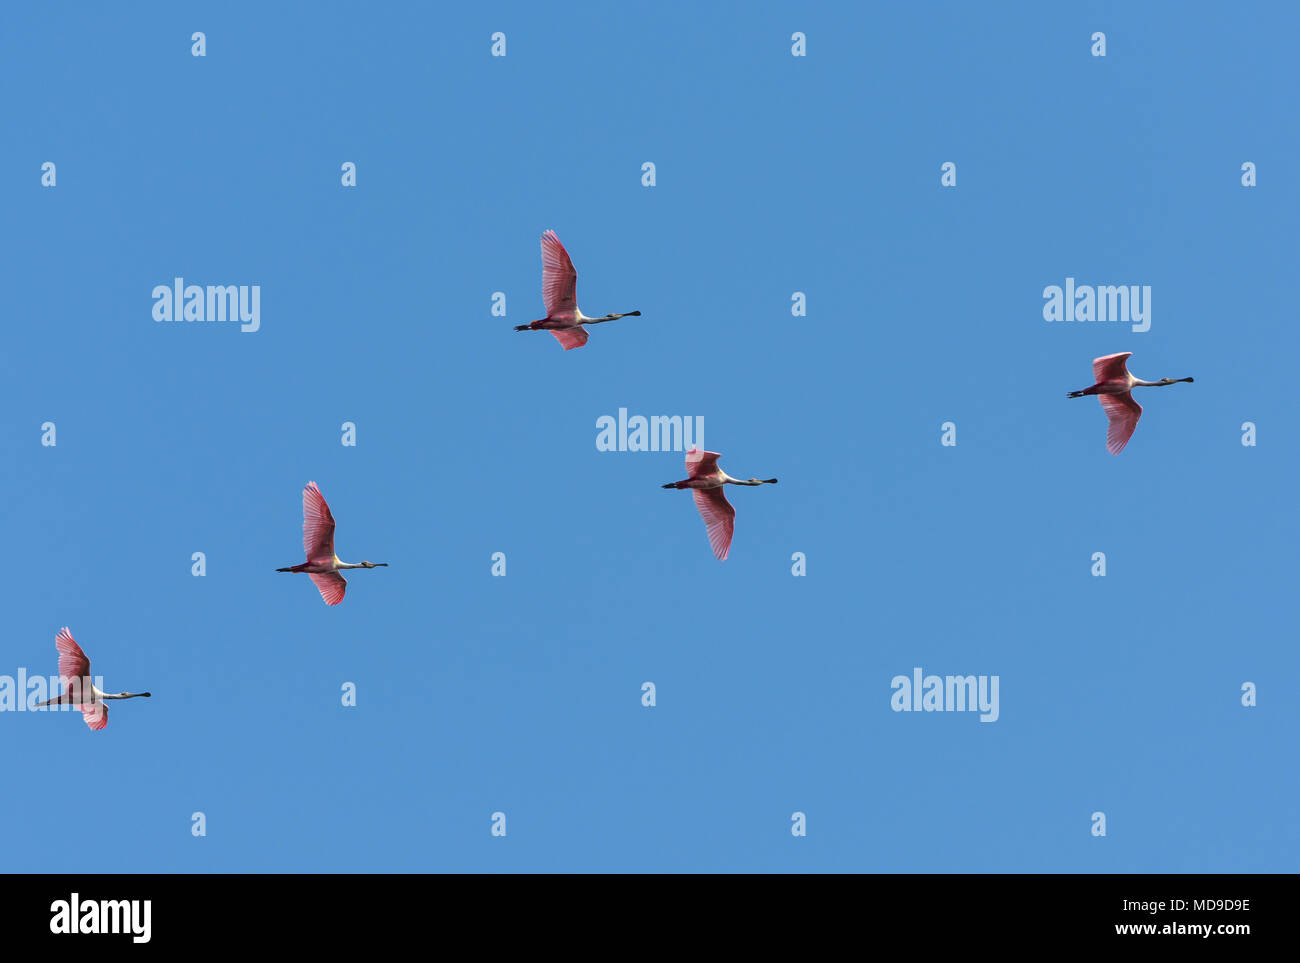 Un troupeau de Sterne de spatules (Platalea ajaja) volant au-dessus de ciel bleu. La Colombie, l'Amérique du Sud. Banque D'Images